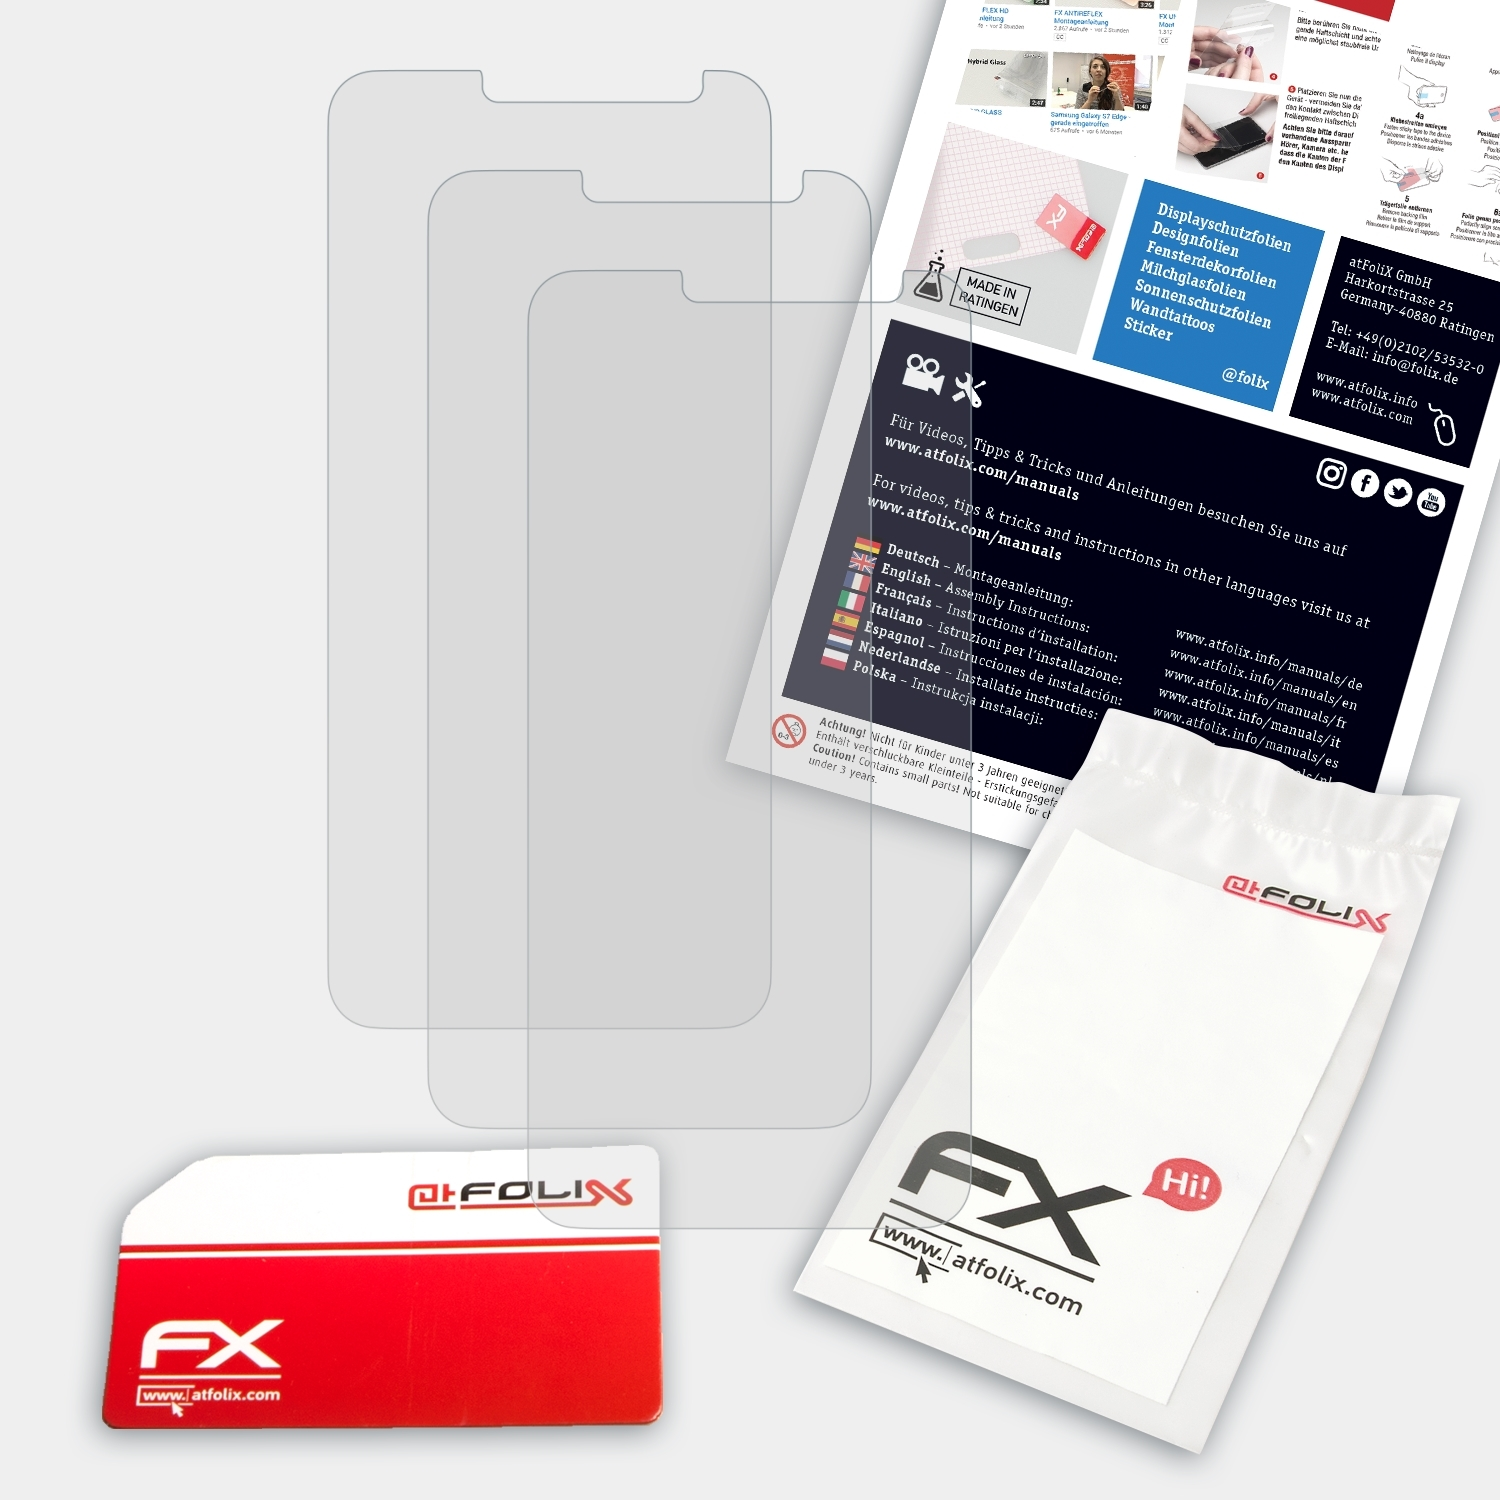 ATFOLIX 3x FX-Antireflex Displayschutz(für Wiko Prime) View